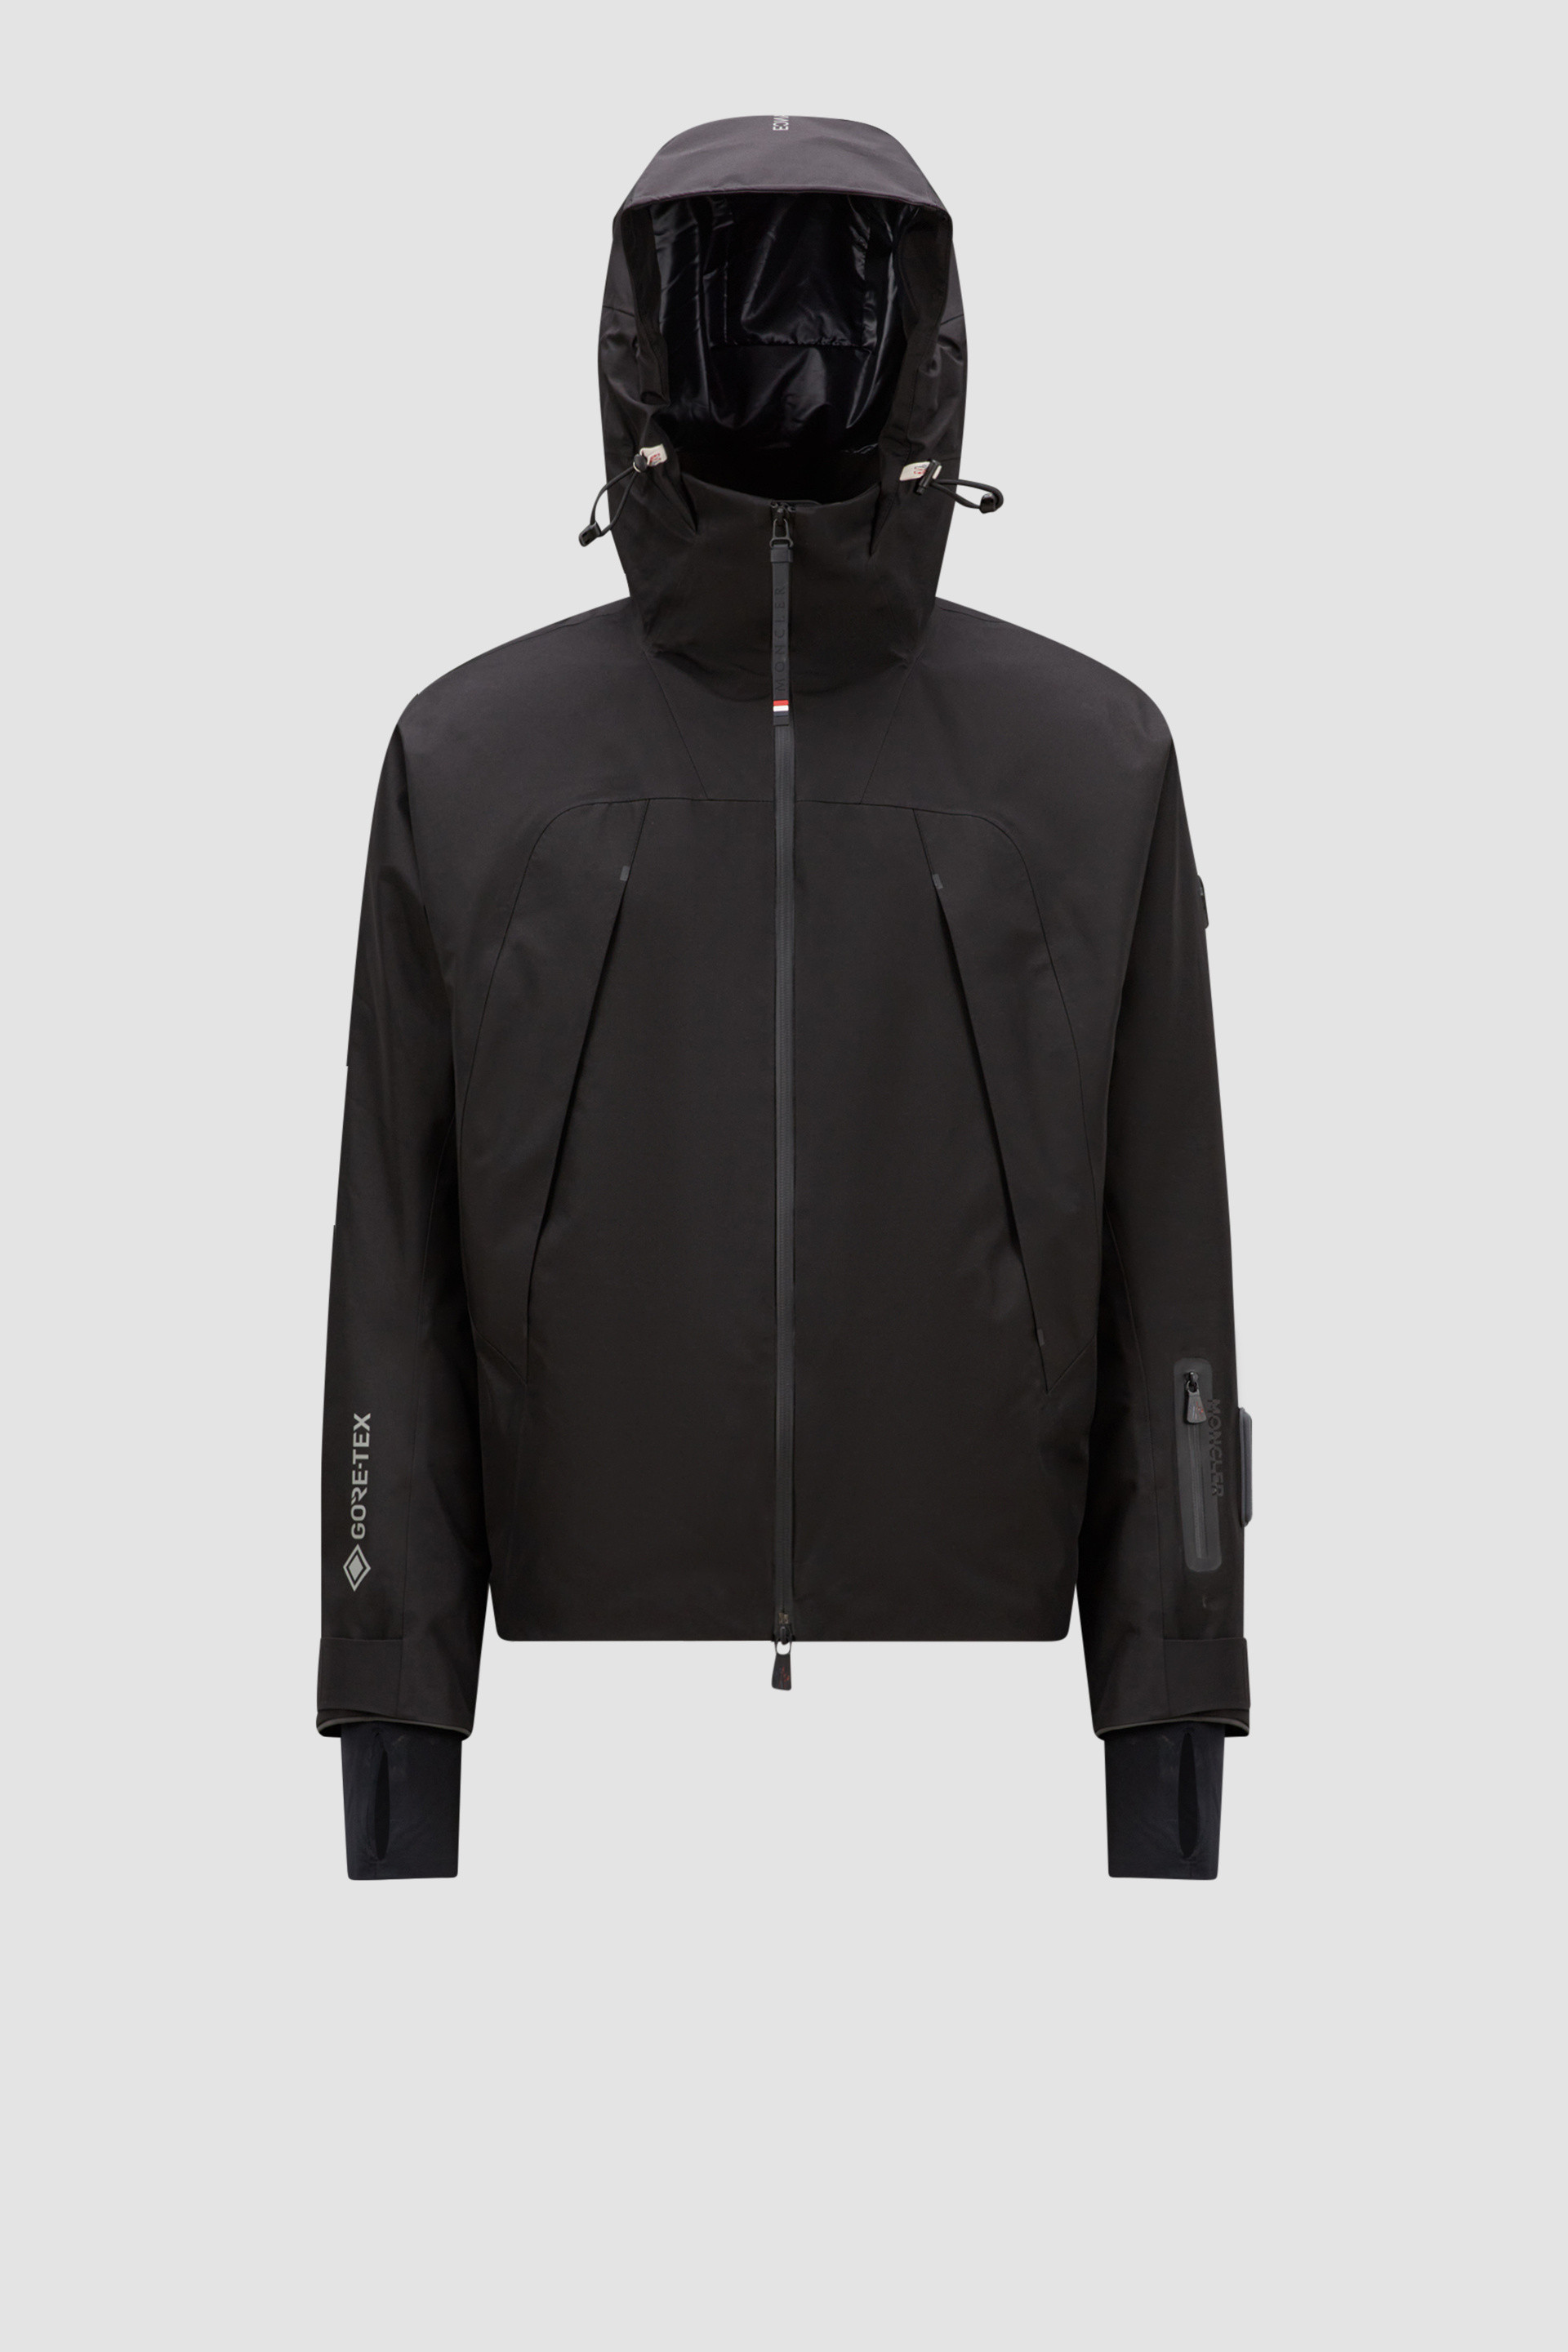 ブラック Lapazジャケット : ウインドブレーカーとレインコート 向けの 